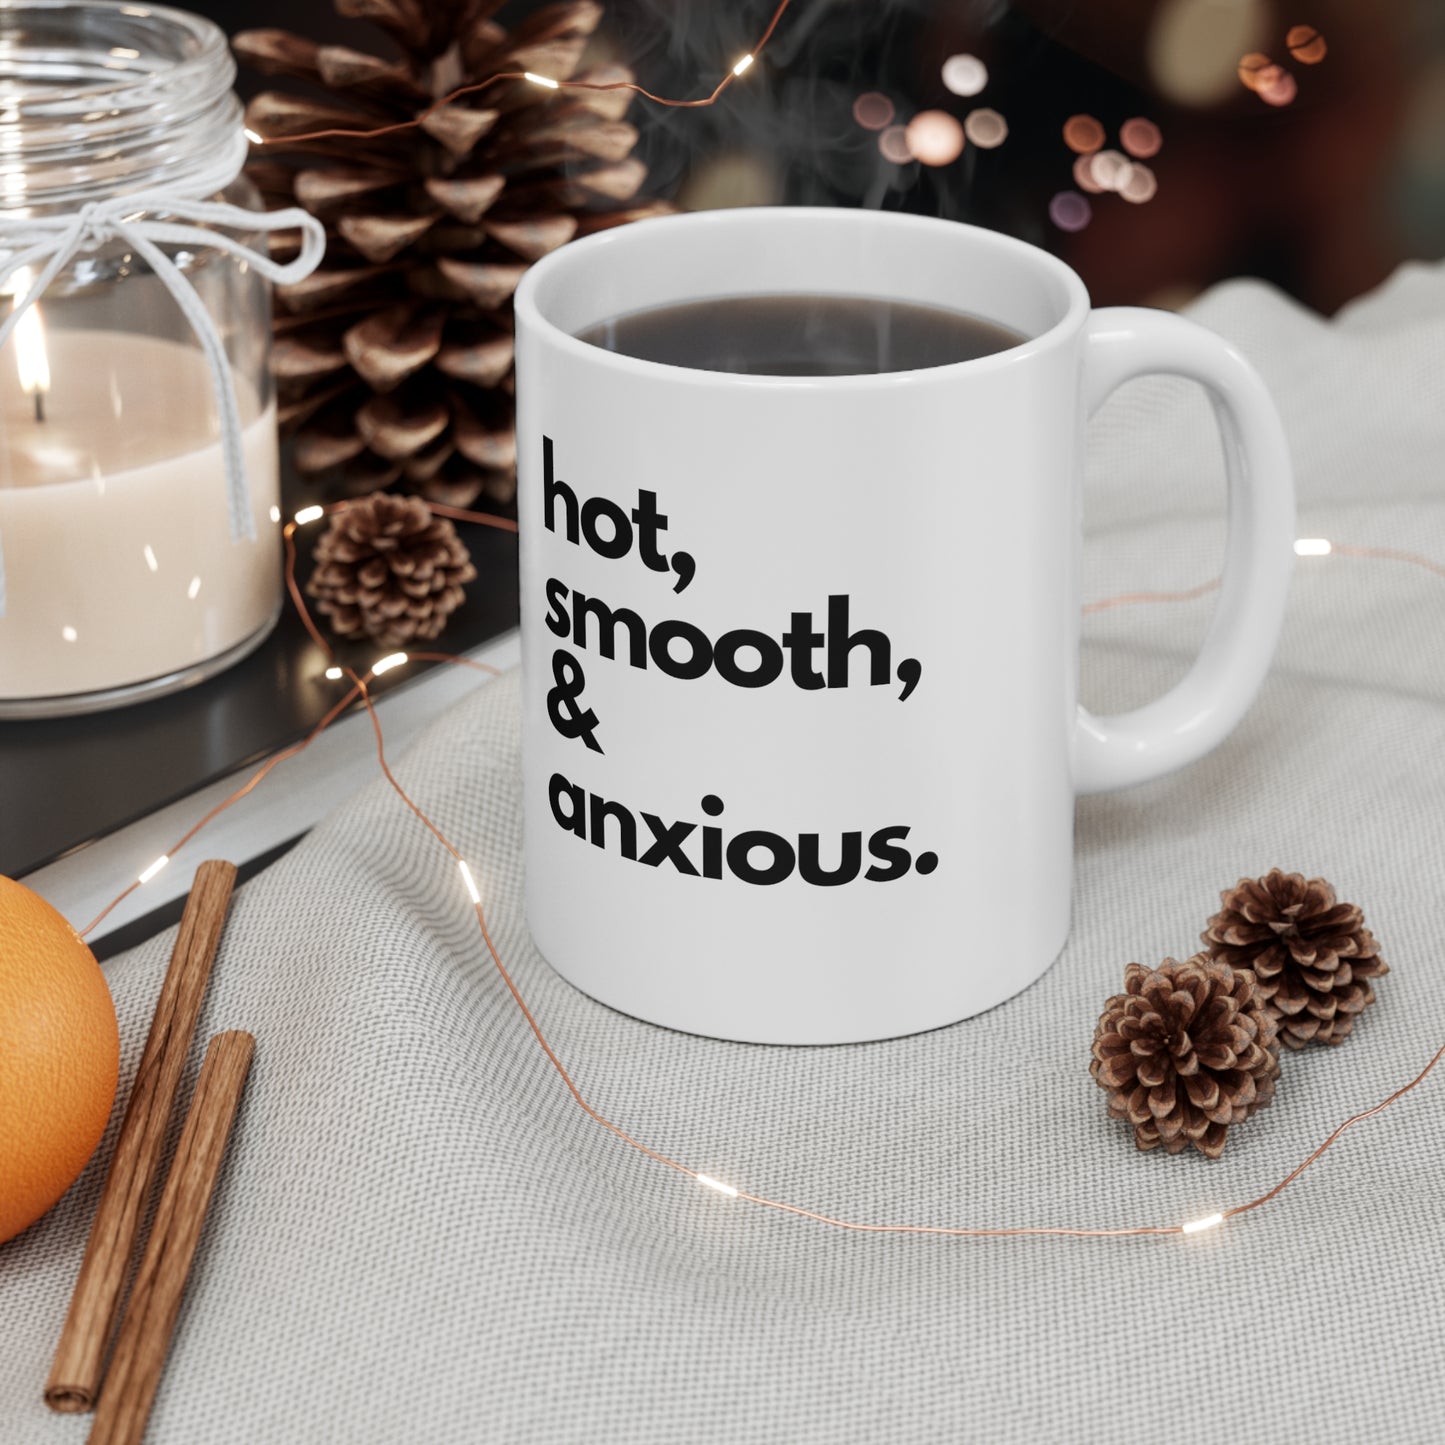 Hot, Smooth, & Anxious Mug